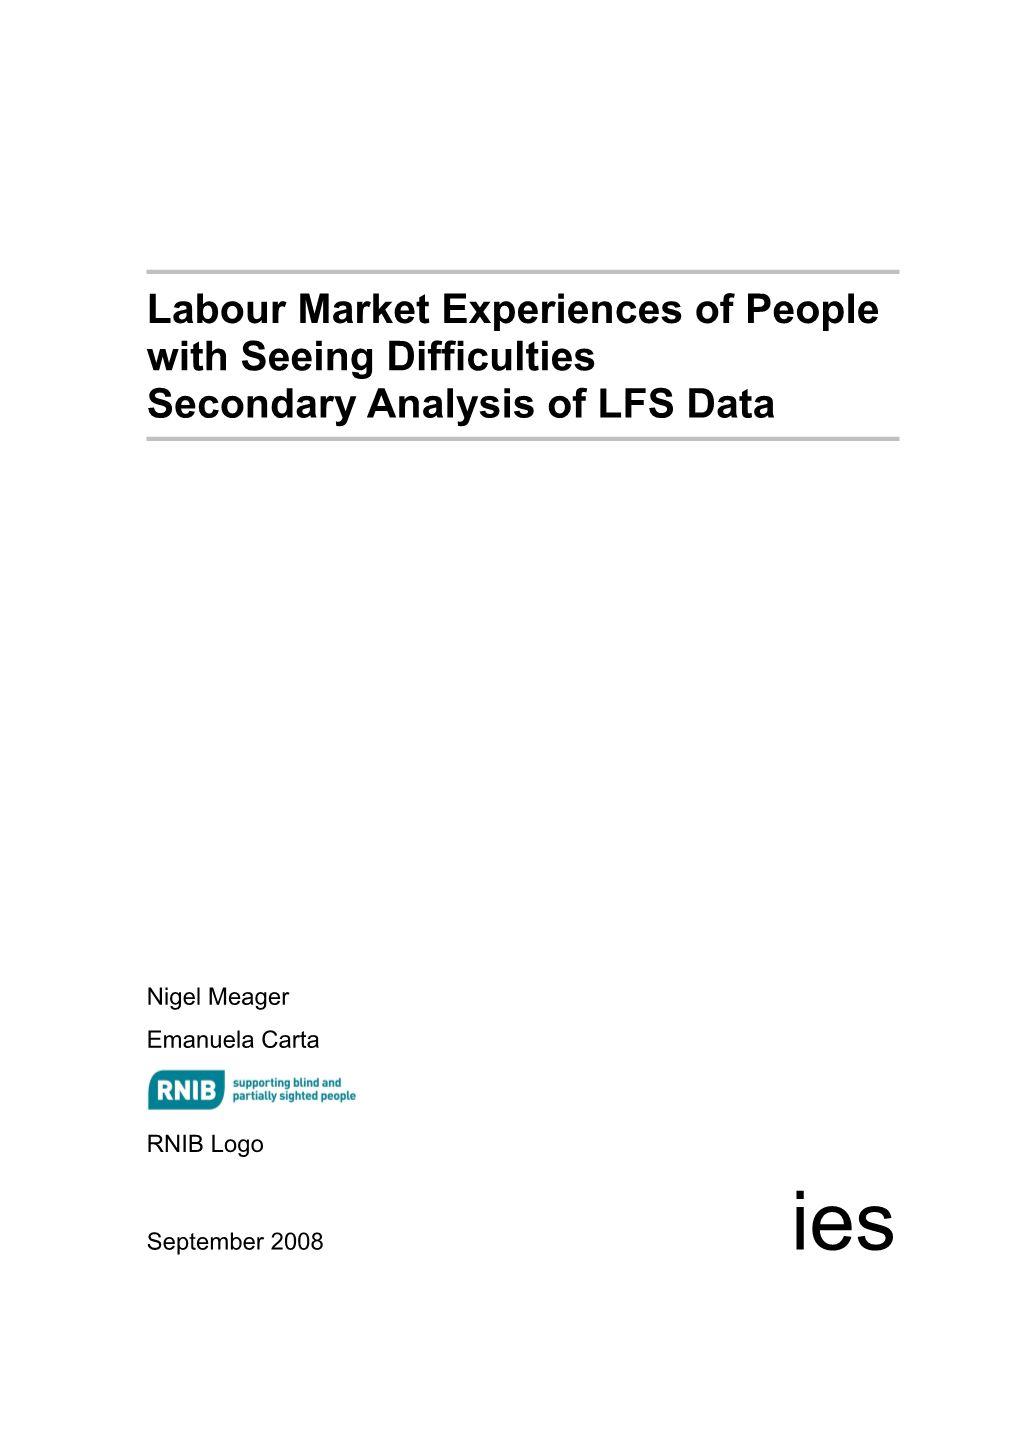 Labour Force Survey Report